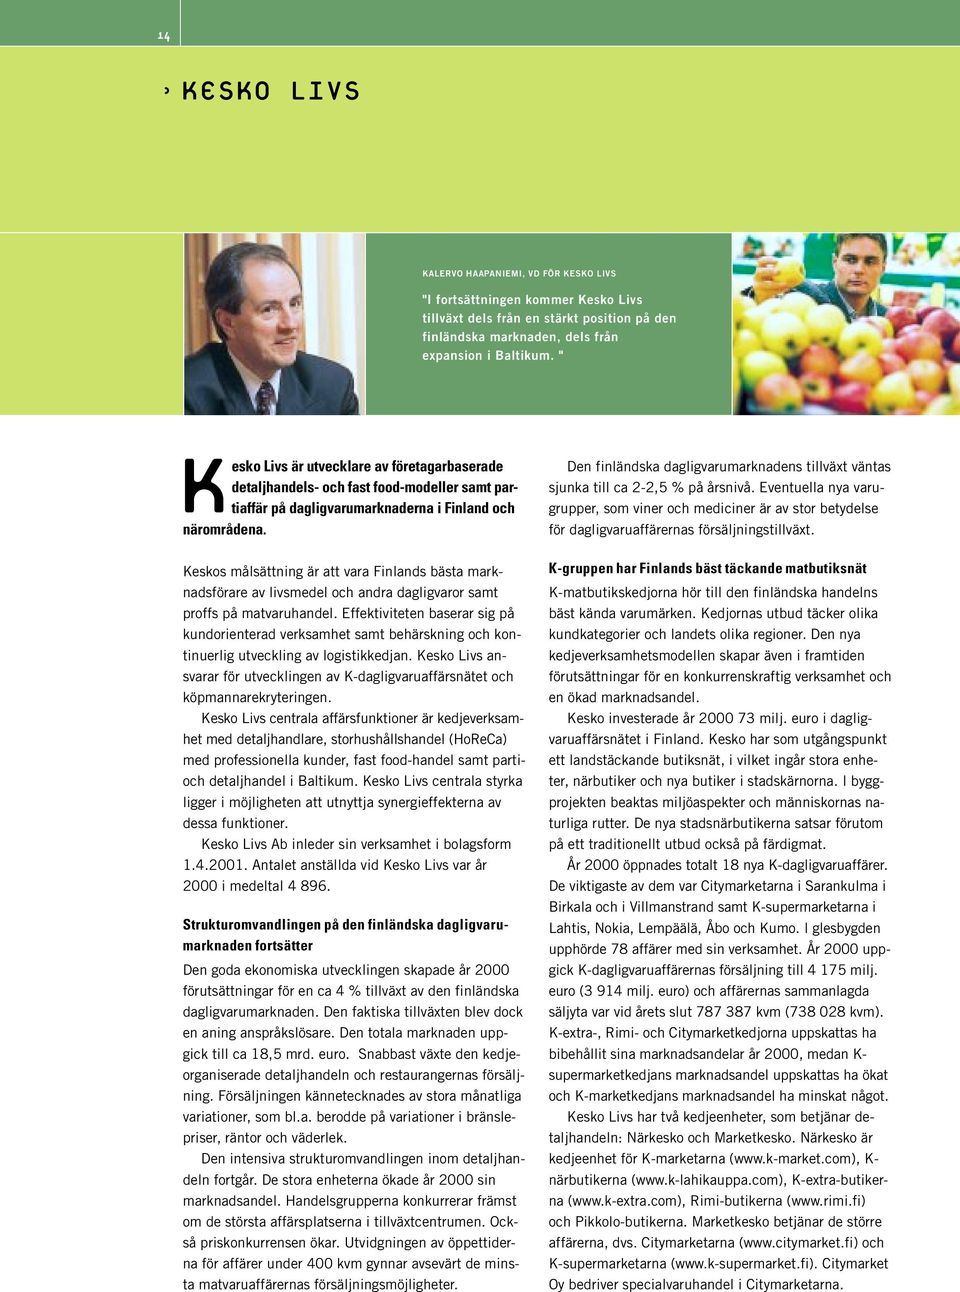 Keskos målsättning är att vara Finlands bästa marknadsförare av livsmedel och andra dagligvaror samt proffs på matvaruhandel.